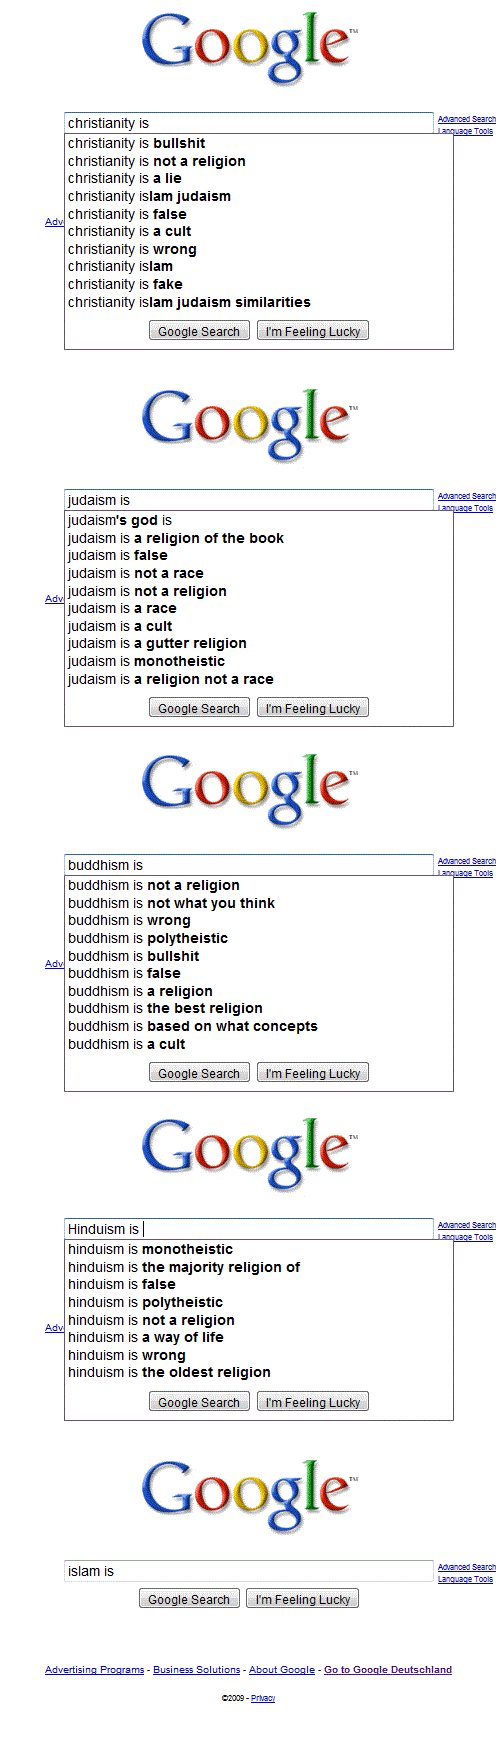 Illustration de la page de résultats de Google pour la recherche 'religion', avec le logo de Google et des liens vers des sites religieux populaires